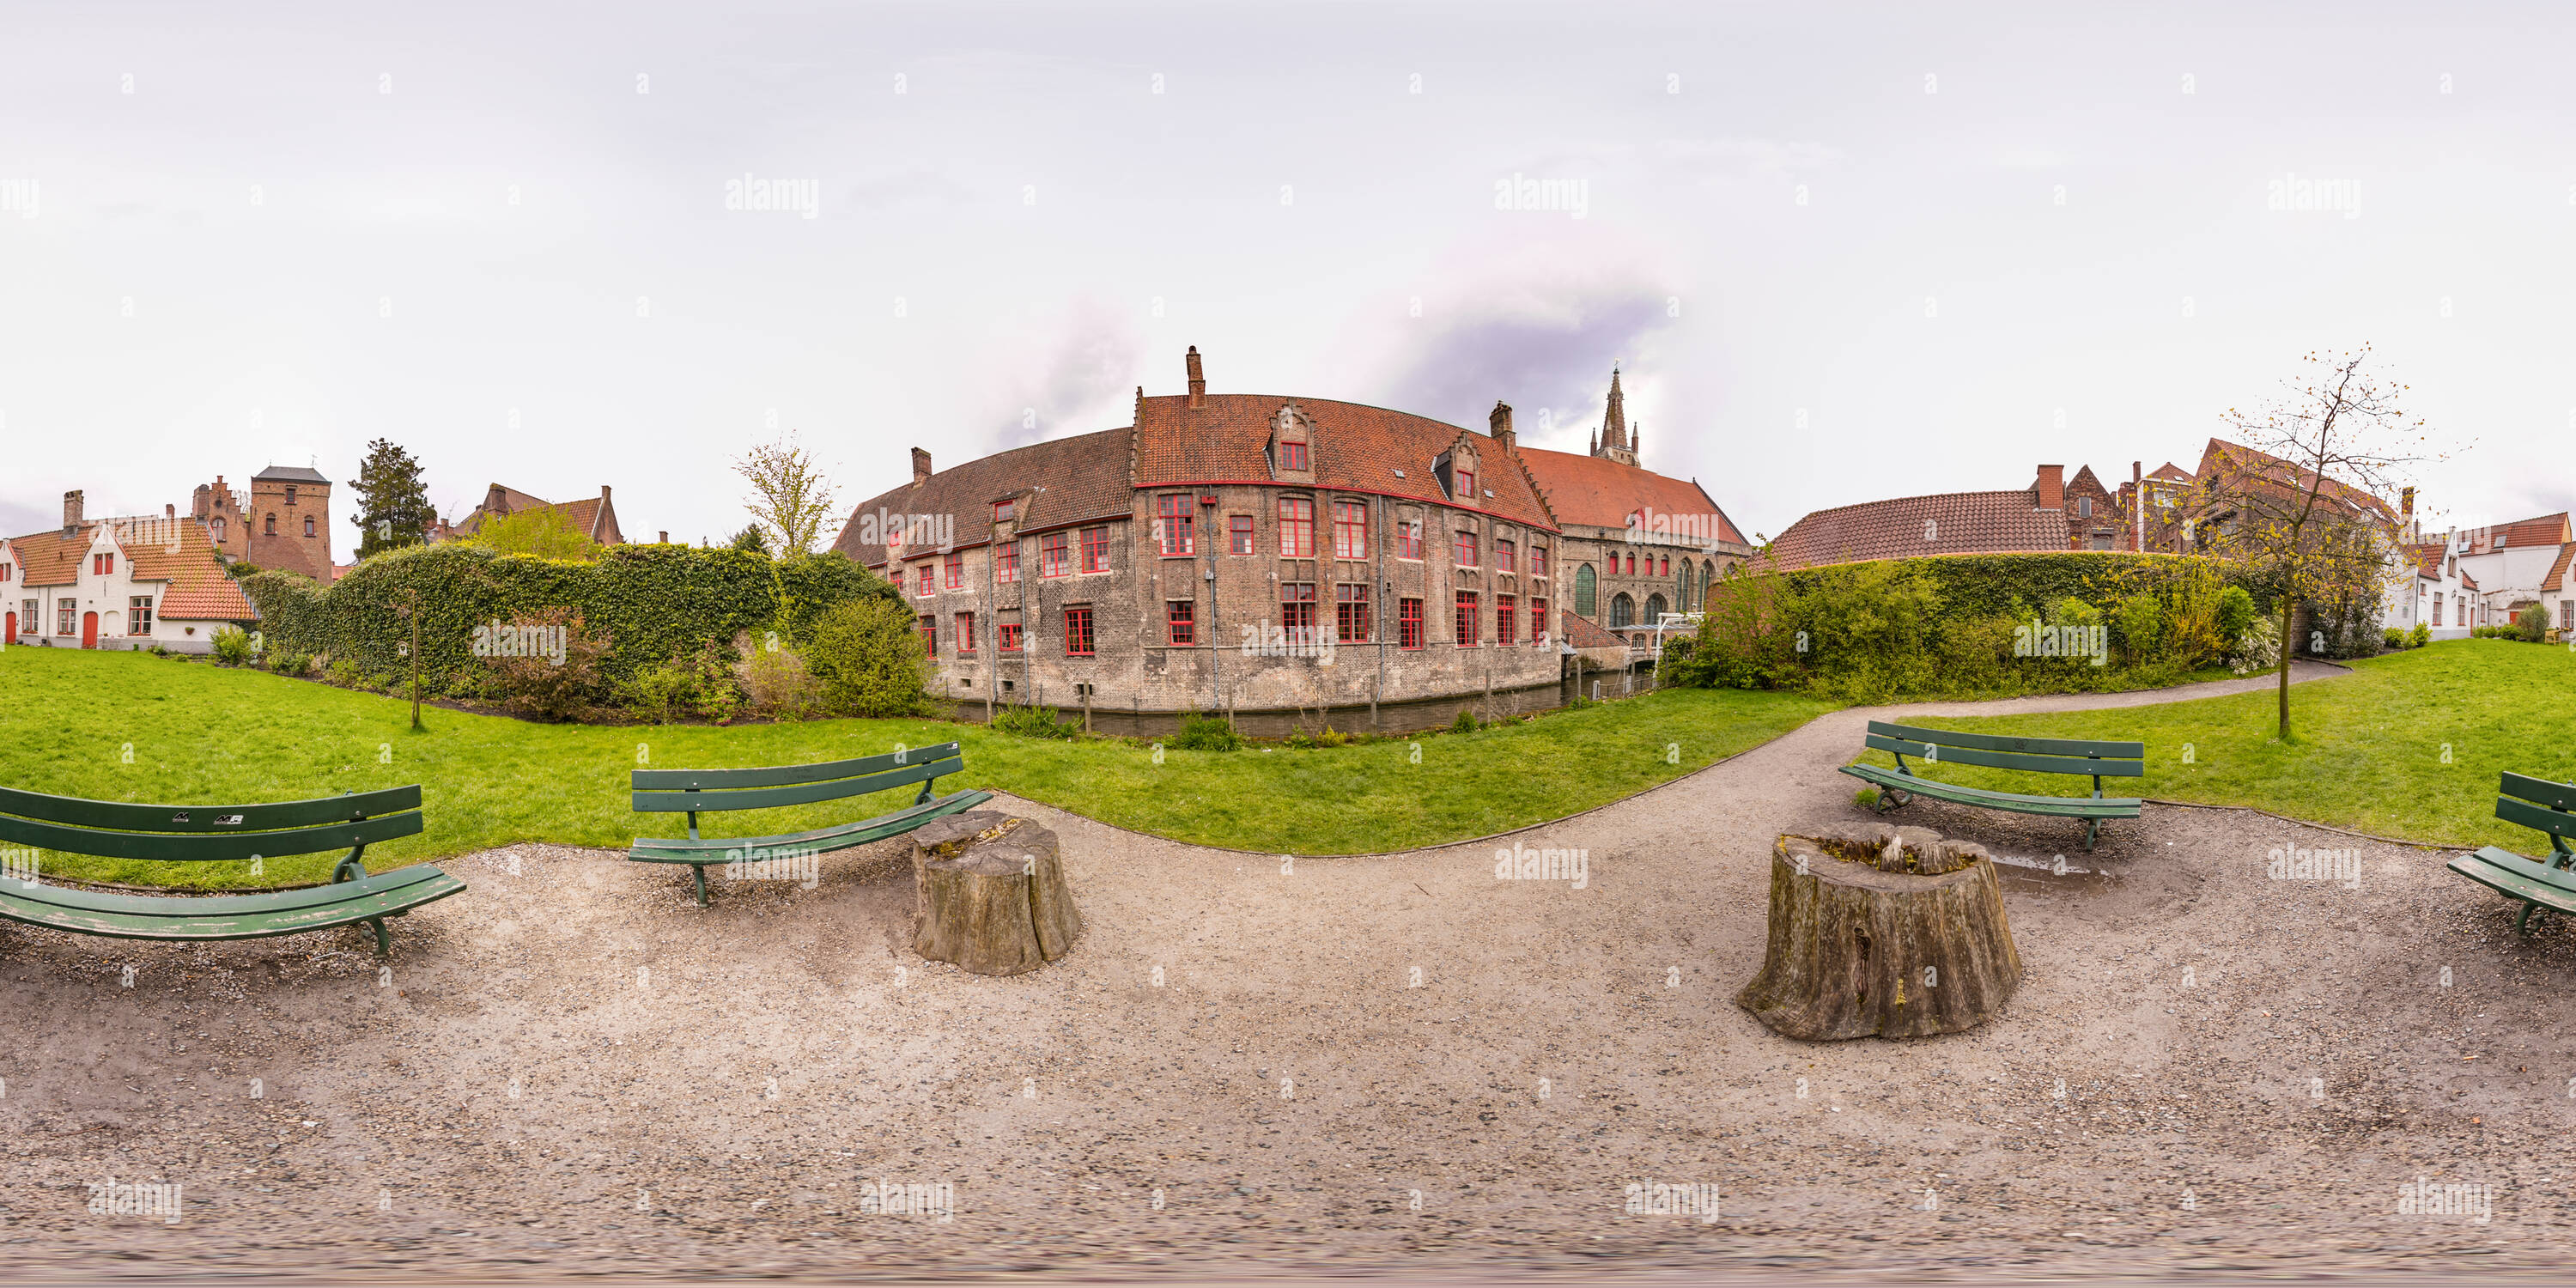 Vue panoramique à 360° de L'Hôpital de Saint John's. Brugge.